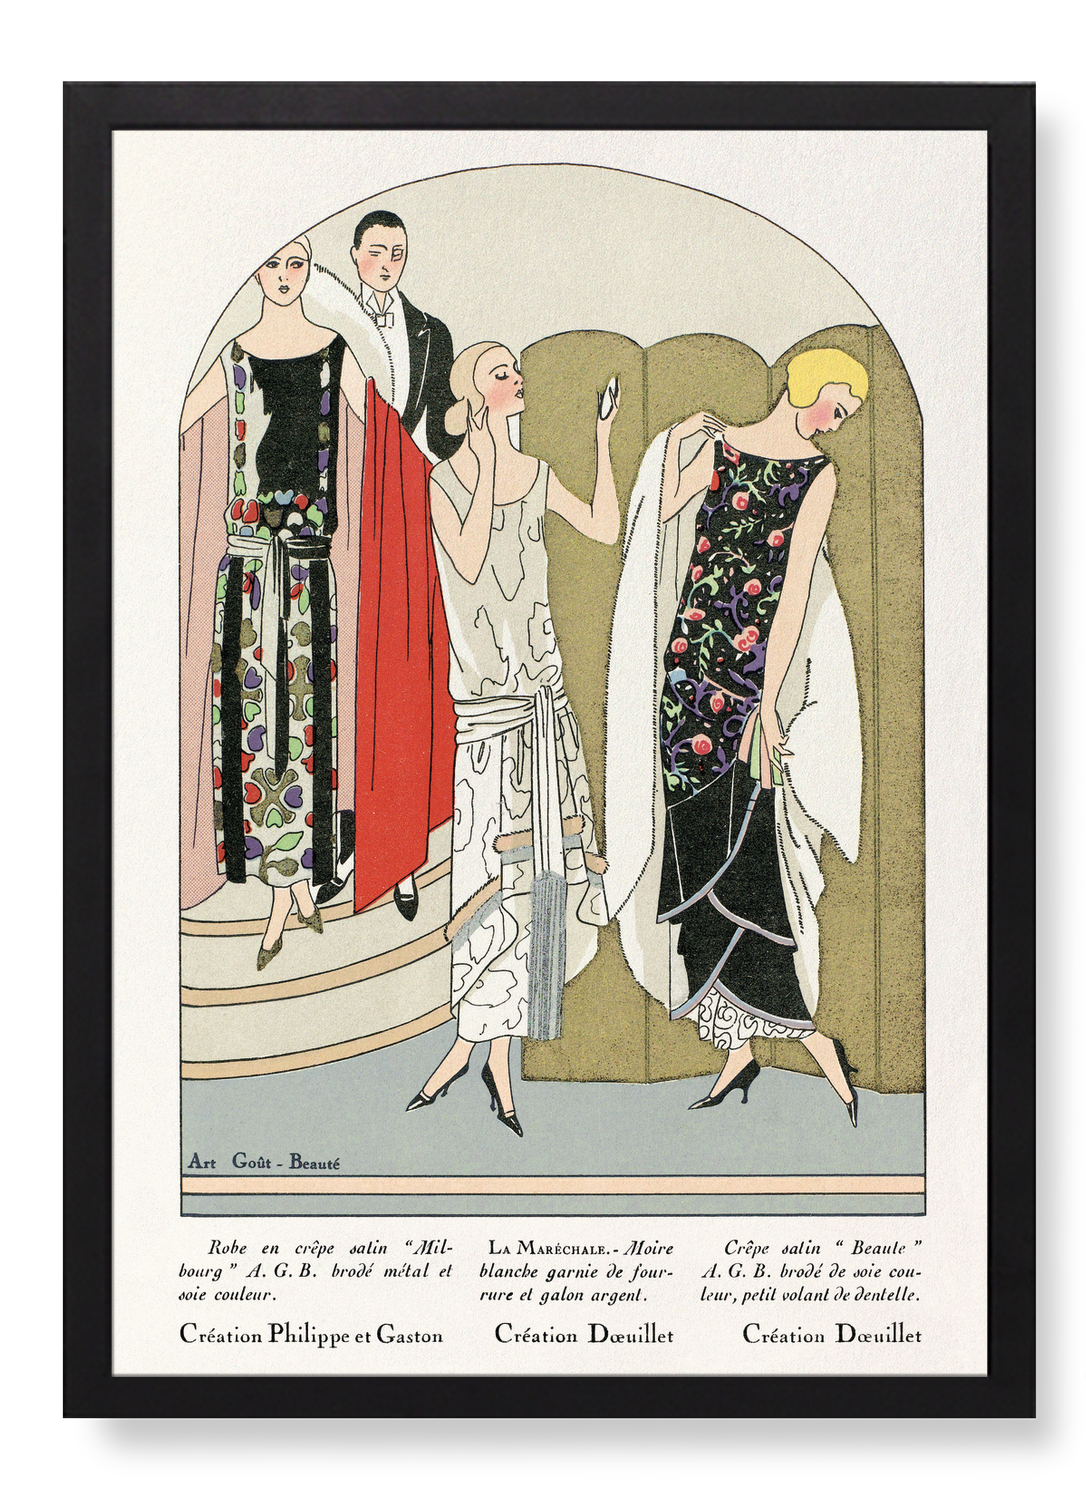 ART–GOÛT–BEAUTÉ (1924)